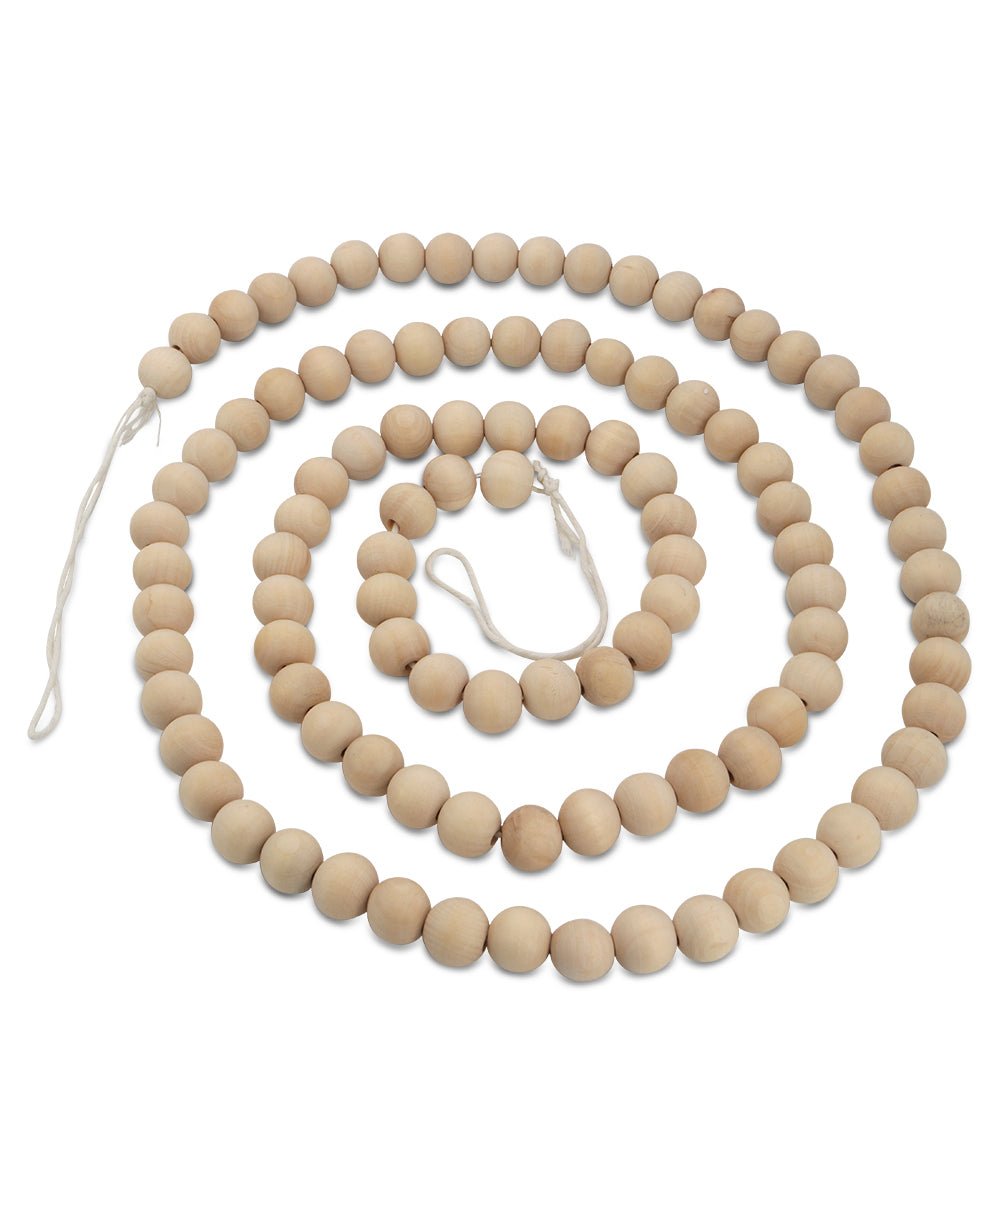 Mala Inspired Wood Beads Garland, 6 Ft Long - Wreaths & Garlands